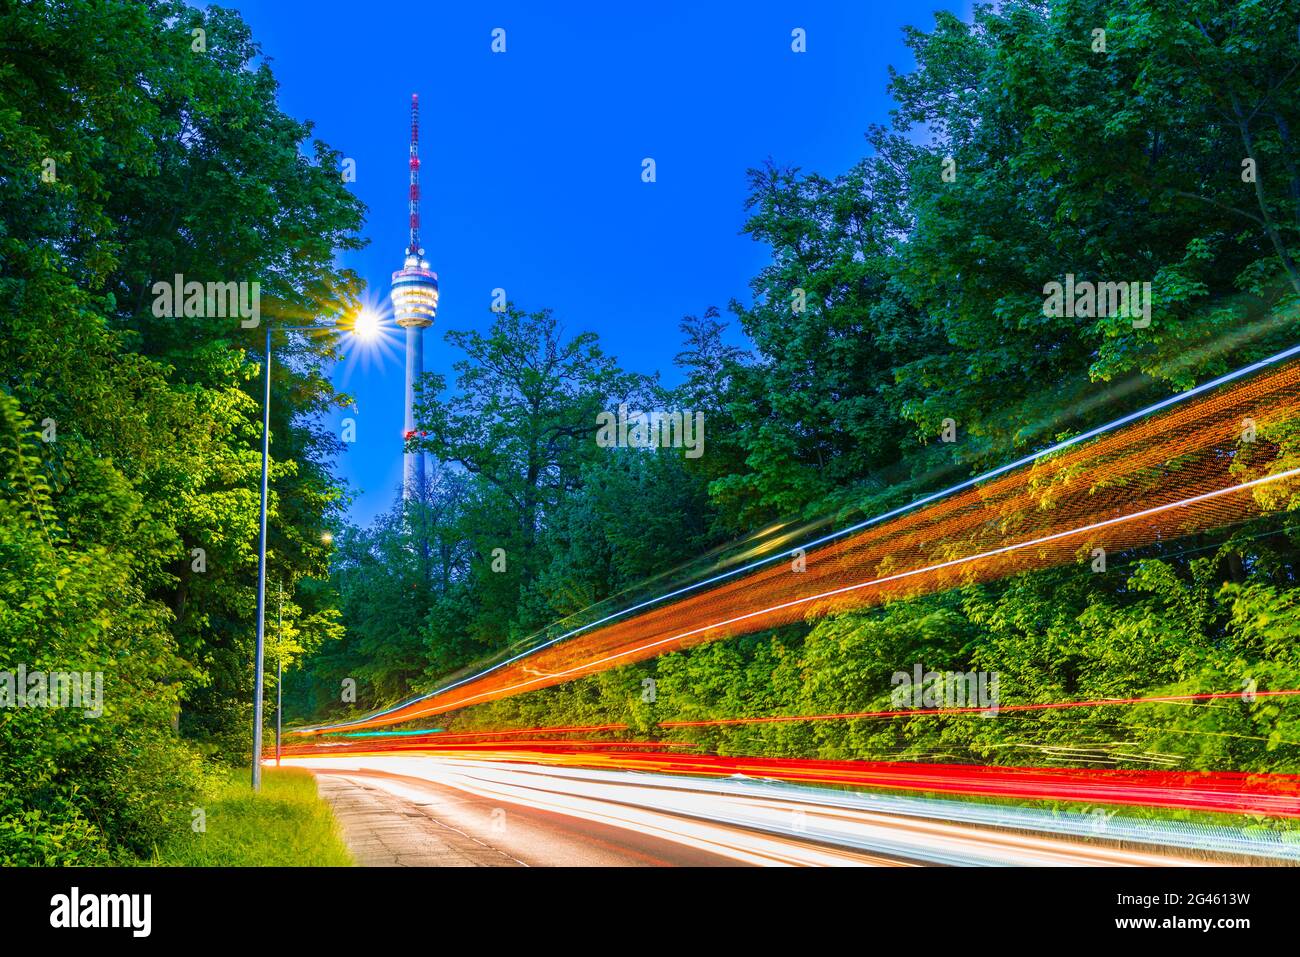 Alemania, ciudad de Stuttgart, el horizonte del edificio de la torre de televisión detrás de calles iluminadas con tráfico por la noche Foto de stock